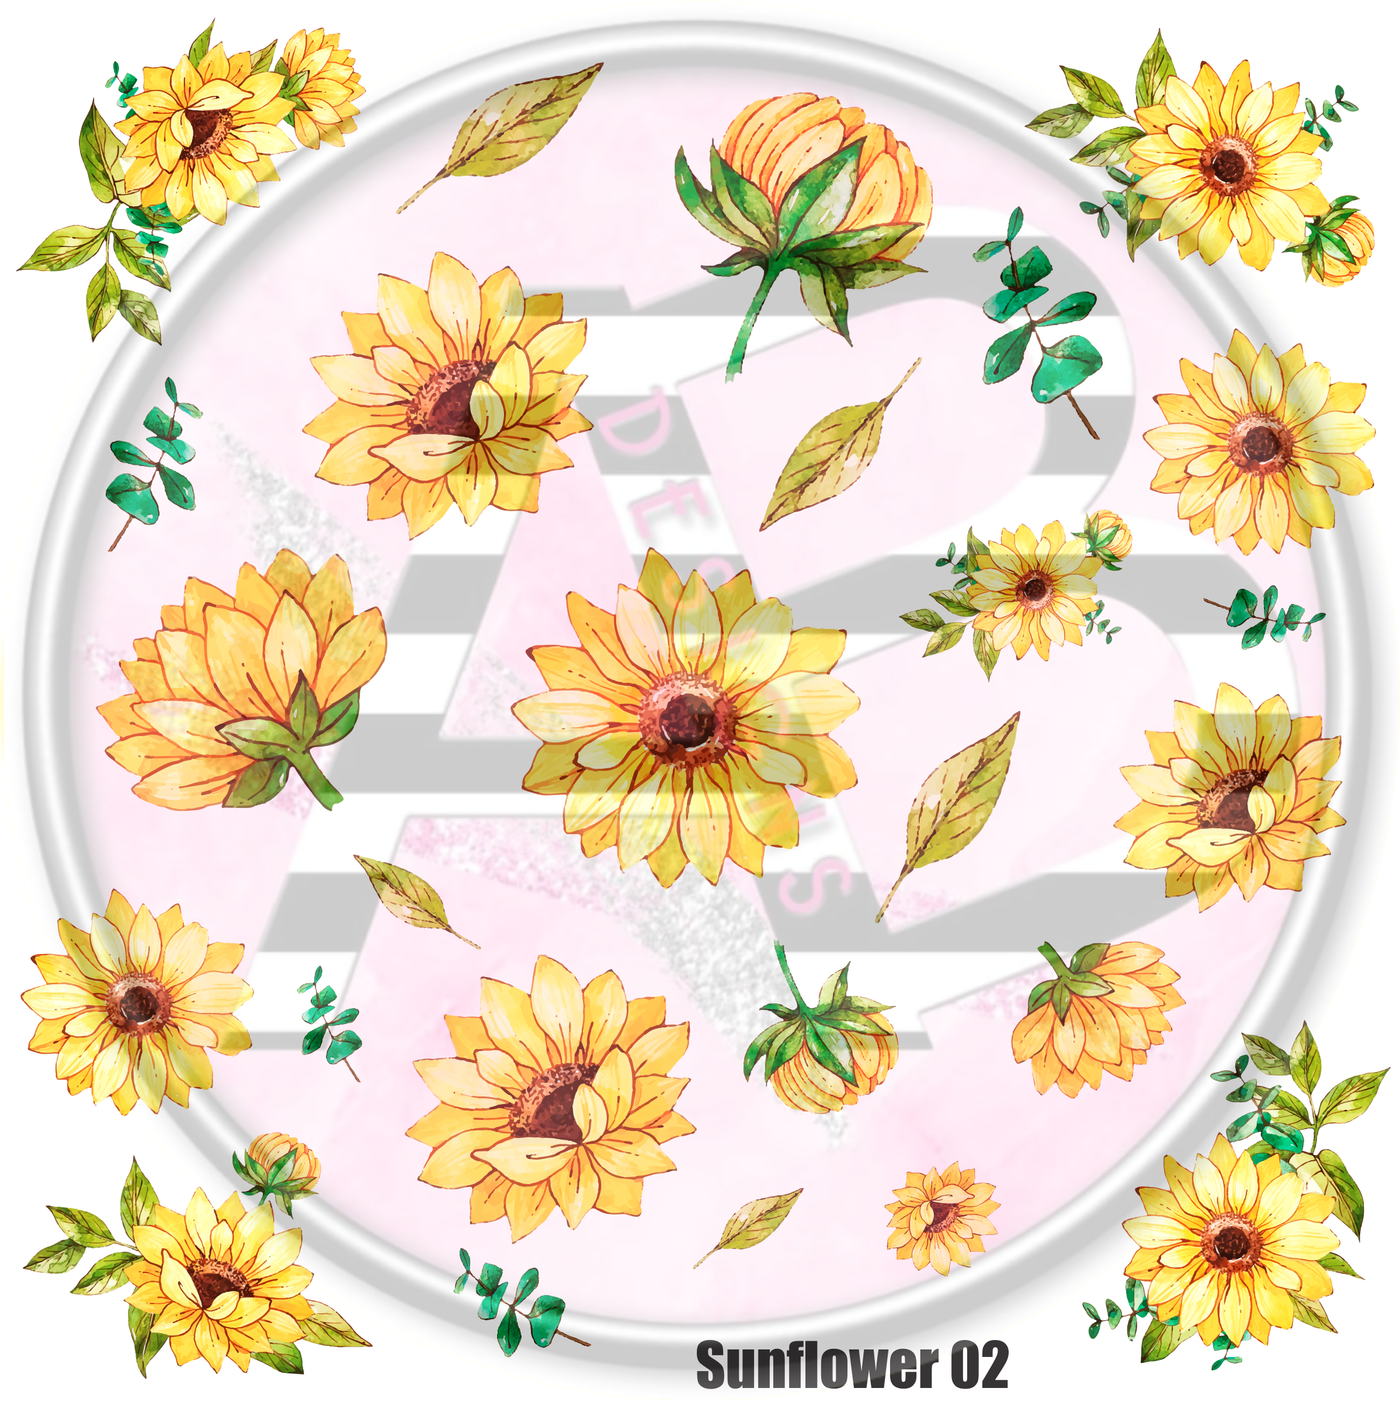 Sunflower 02 Full Sheet 12x12 Clear Cast Decal